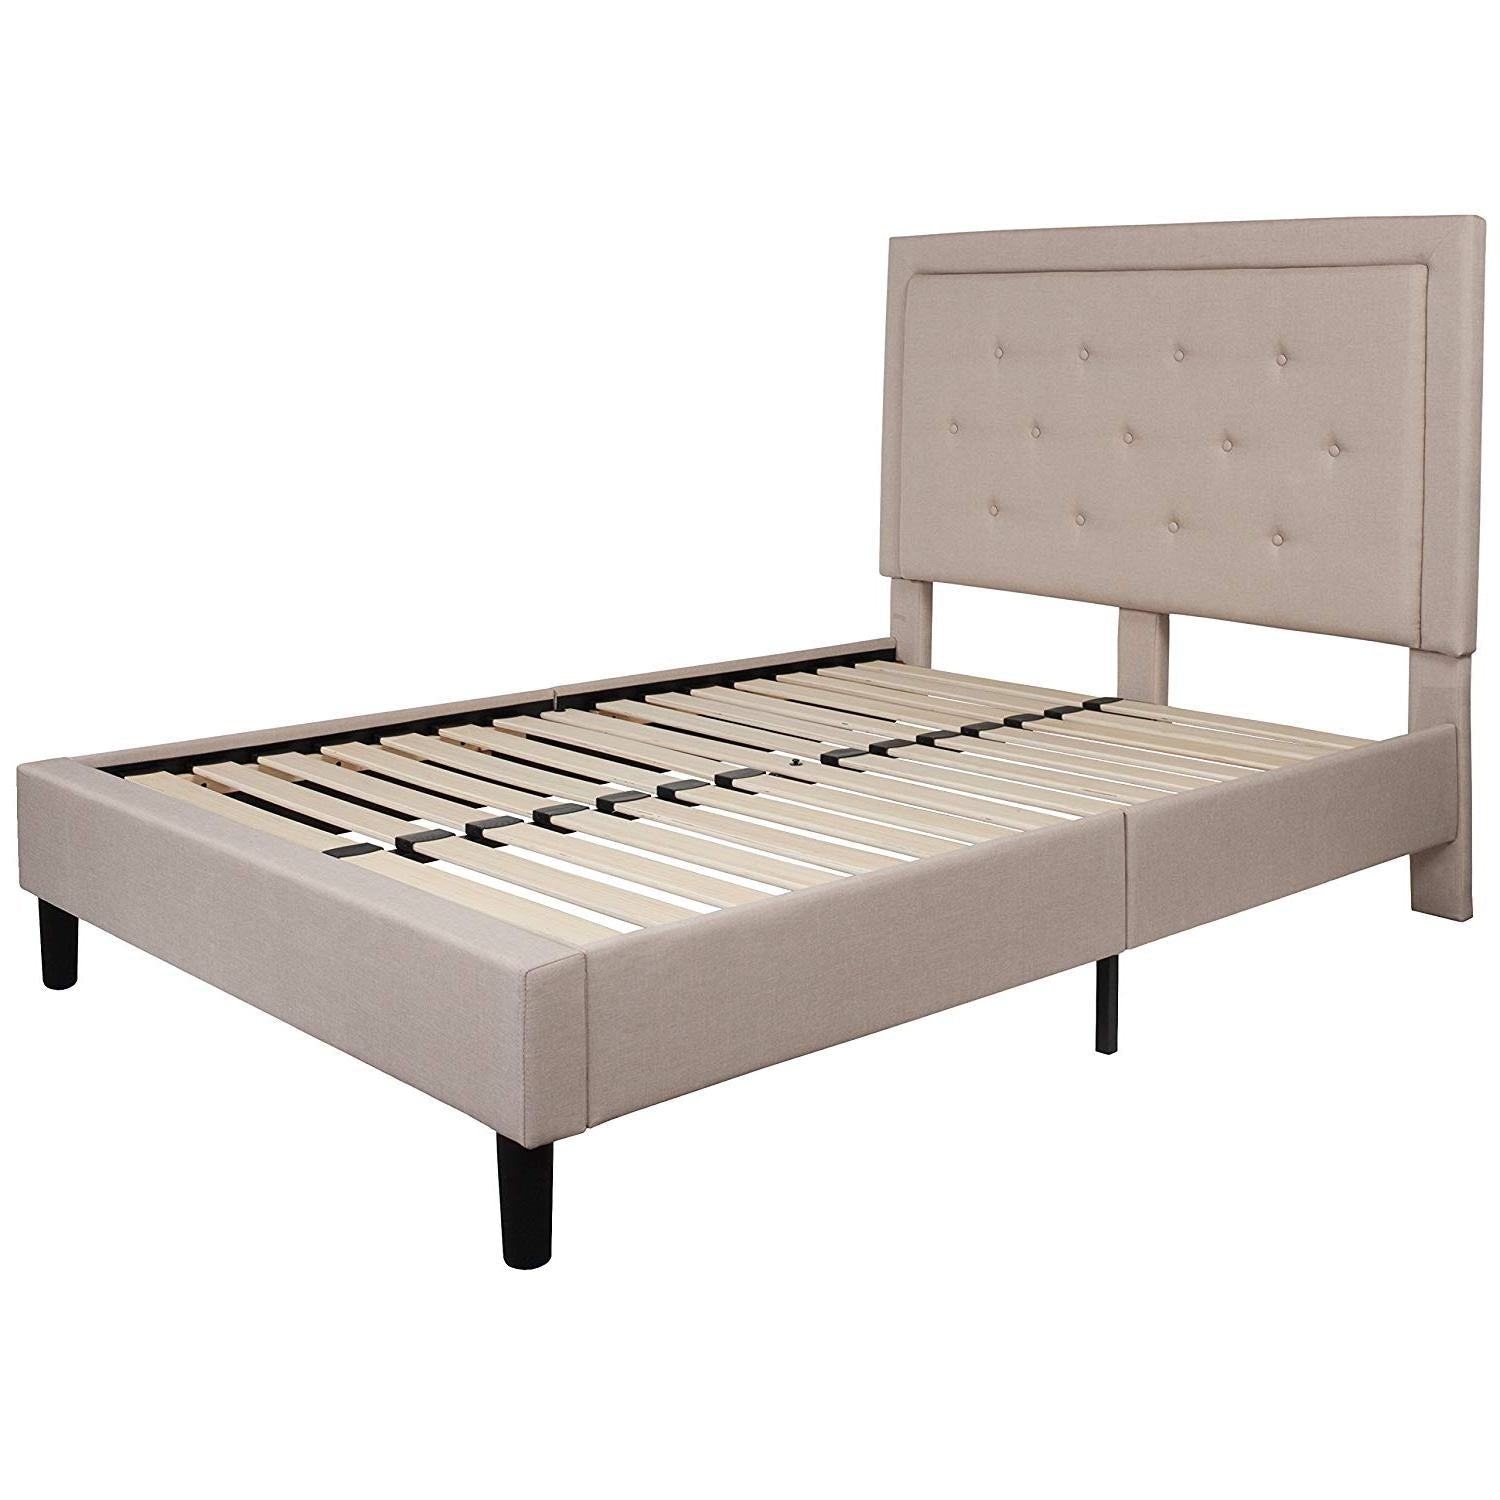 Bedroom > Bed Frames > Platform Beds - Full Beige Fabric Upholstered Platform Bed Frame With Tufted Headboard